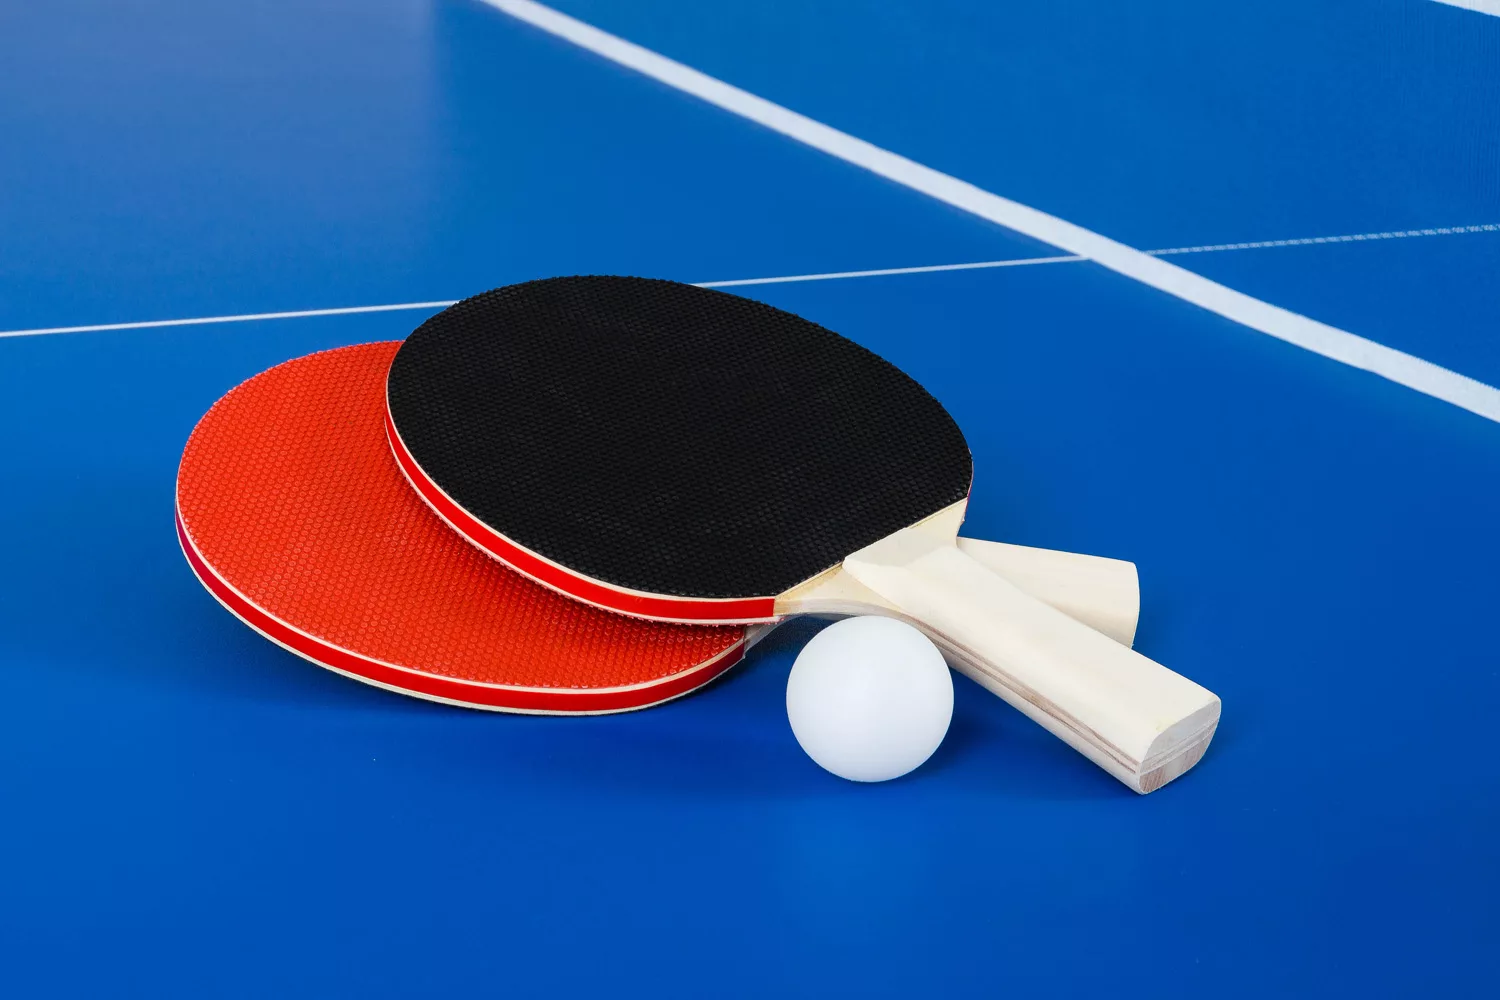 Теннис пинг понг